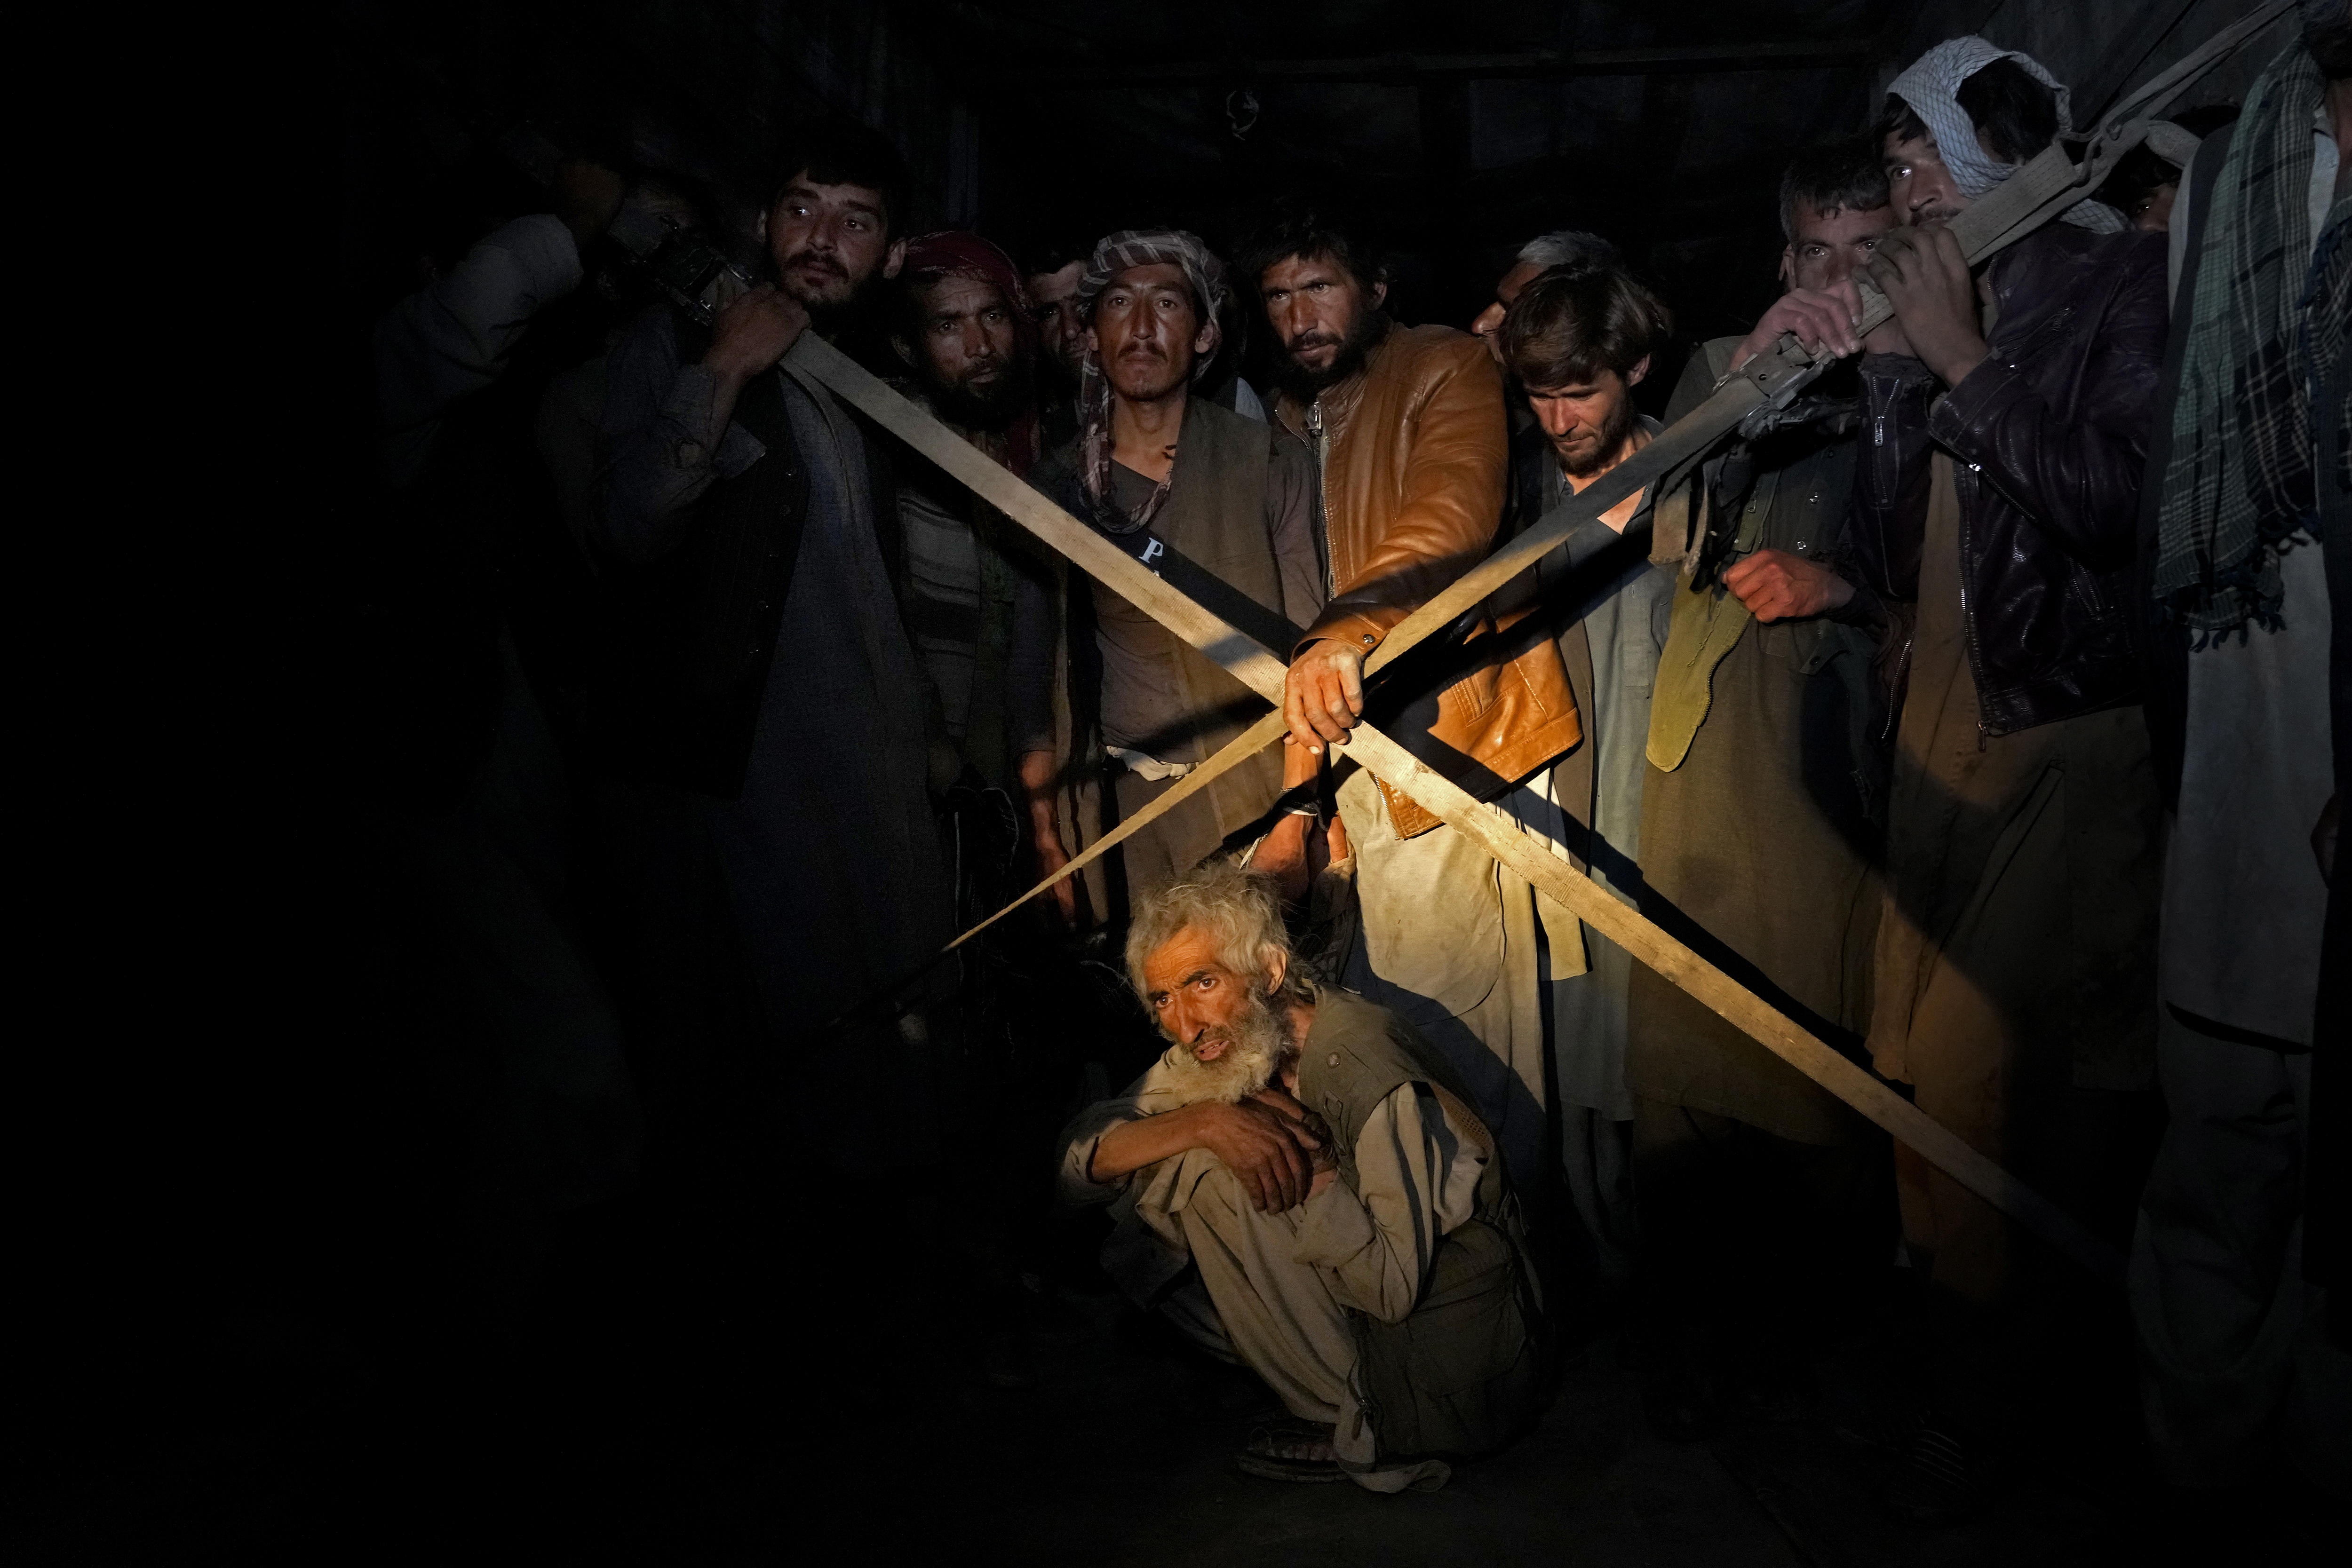 Los adictos afganos detenidos durante una redada talibán esperan en un camión para ser llevados a un campo de tratamiento de drogas (AP/Ebrahim Noroozi)